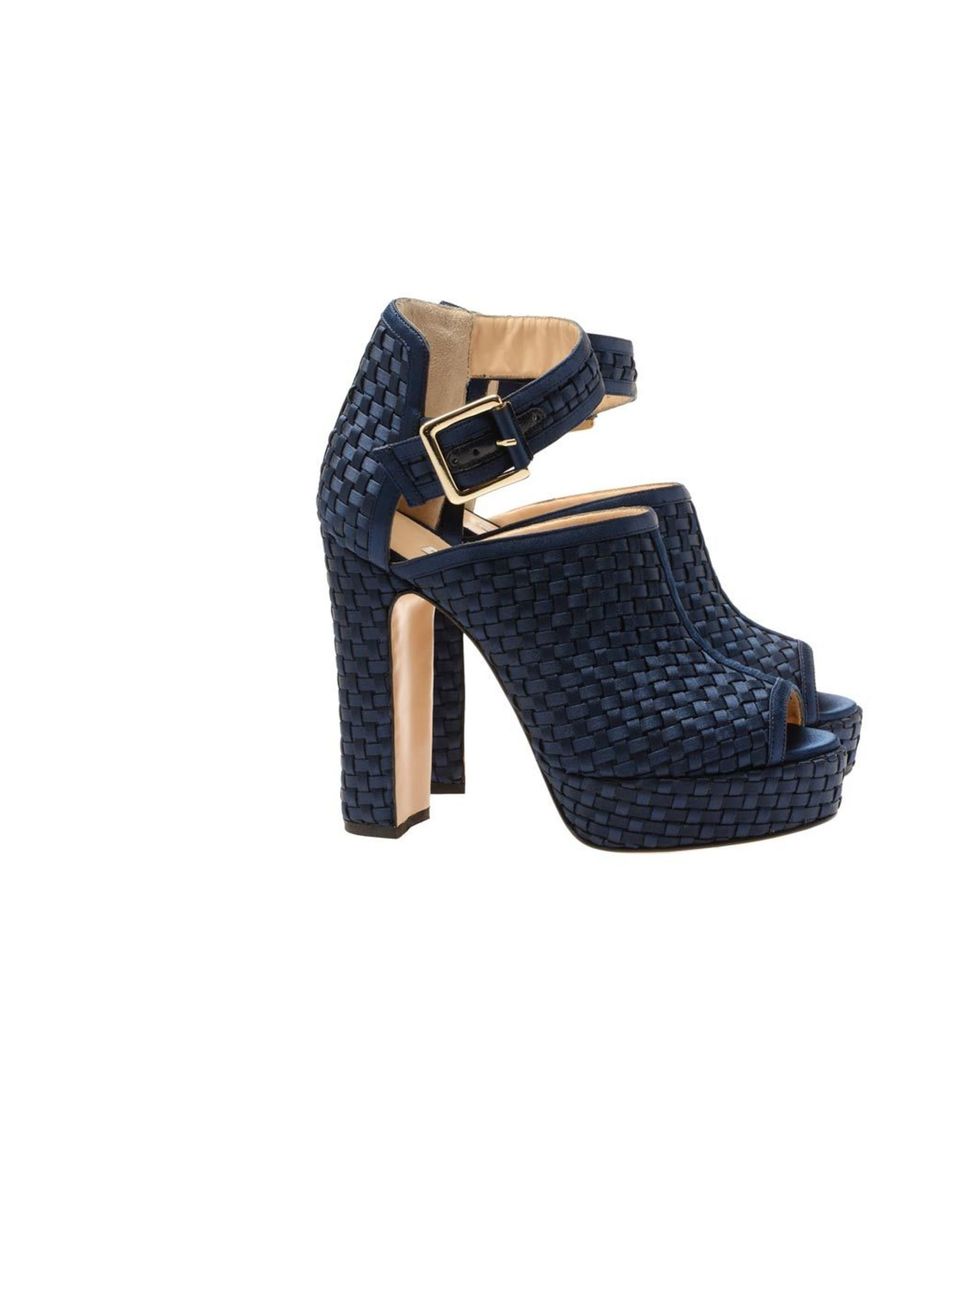 <p>Bionda Castana Christa lattice woven shoe boots, £595, at Browns Fashion</p><p><a href="http://shopping.elleuk.com/browse?fts=bionda+castana">BUY NOW</a></p>